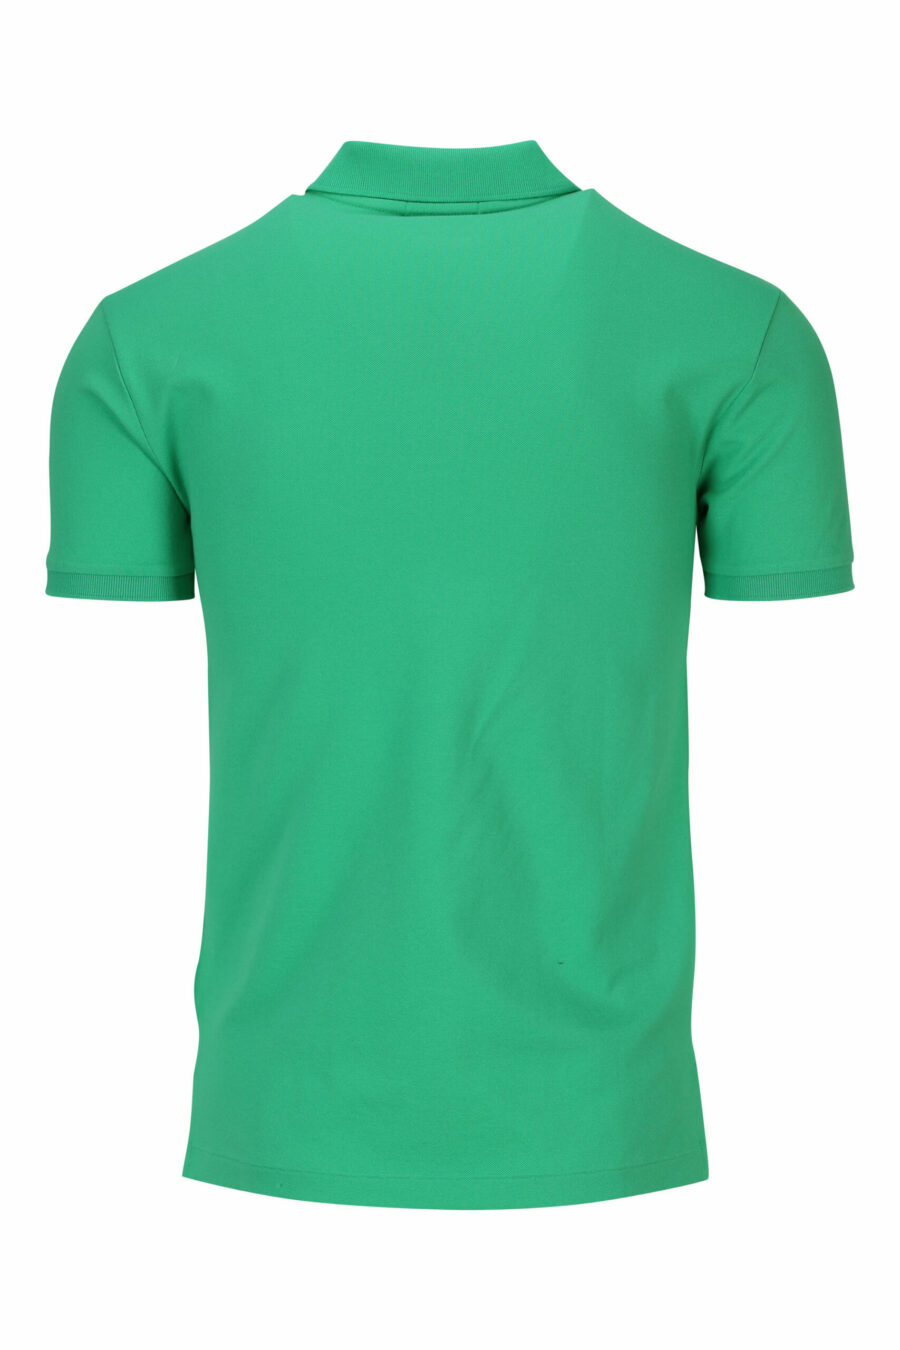 T-shirt verde e azul com mini logótipo "polo" - 3616535909687 1 à escala